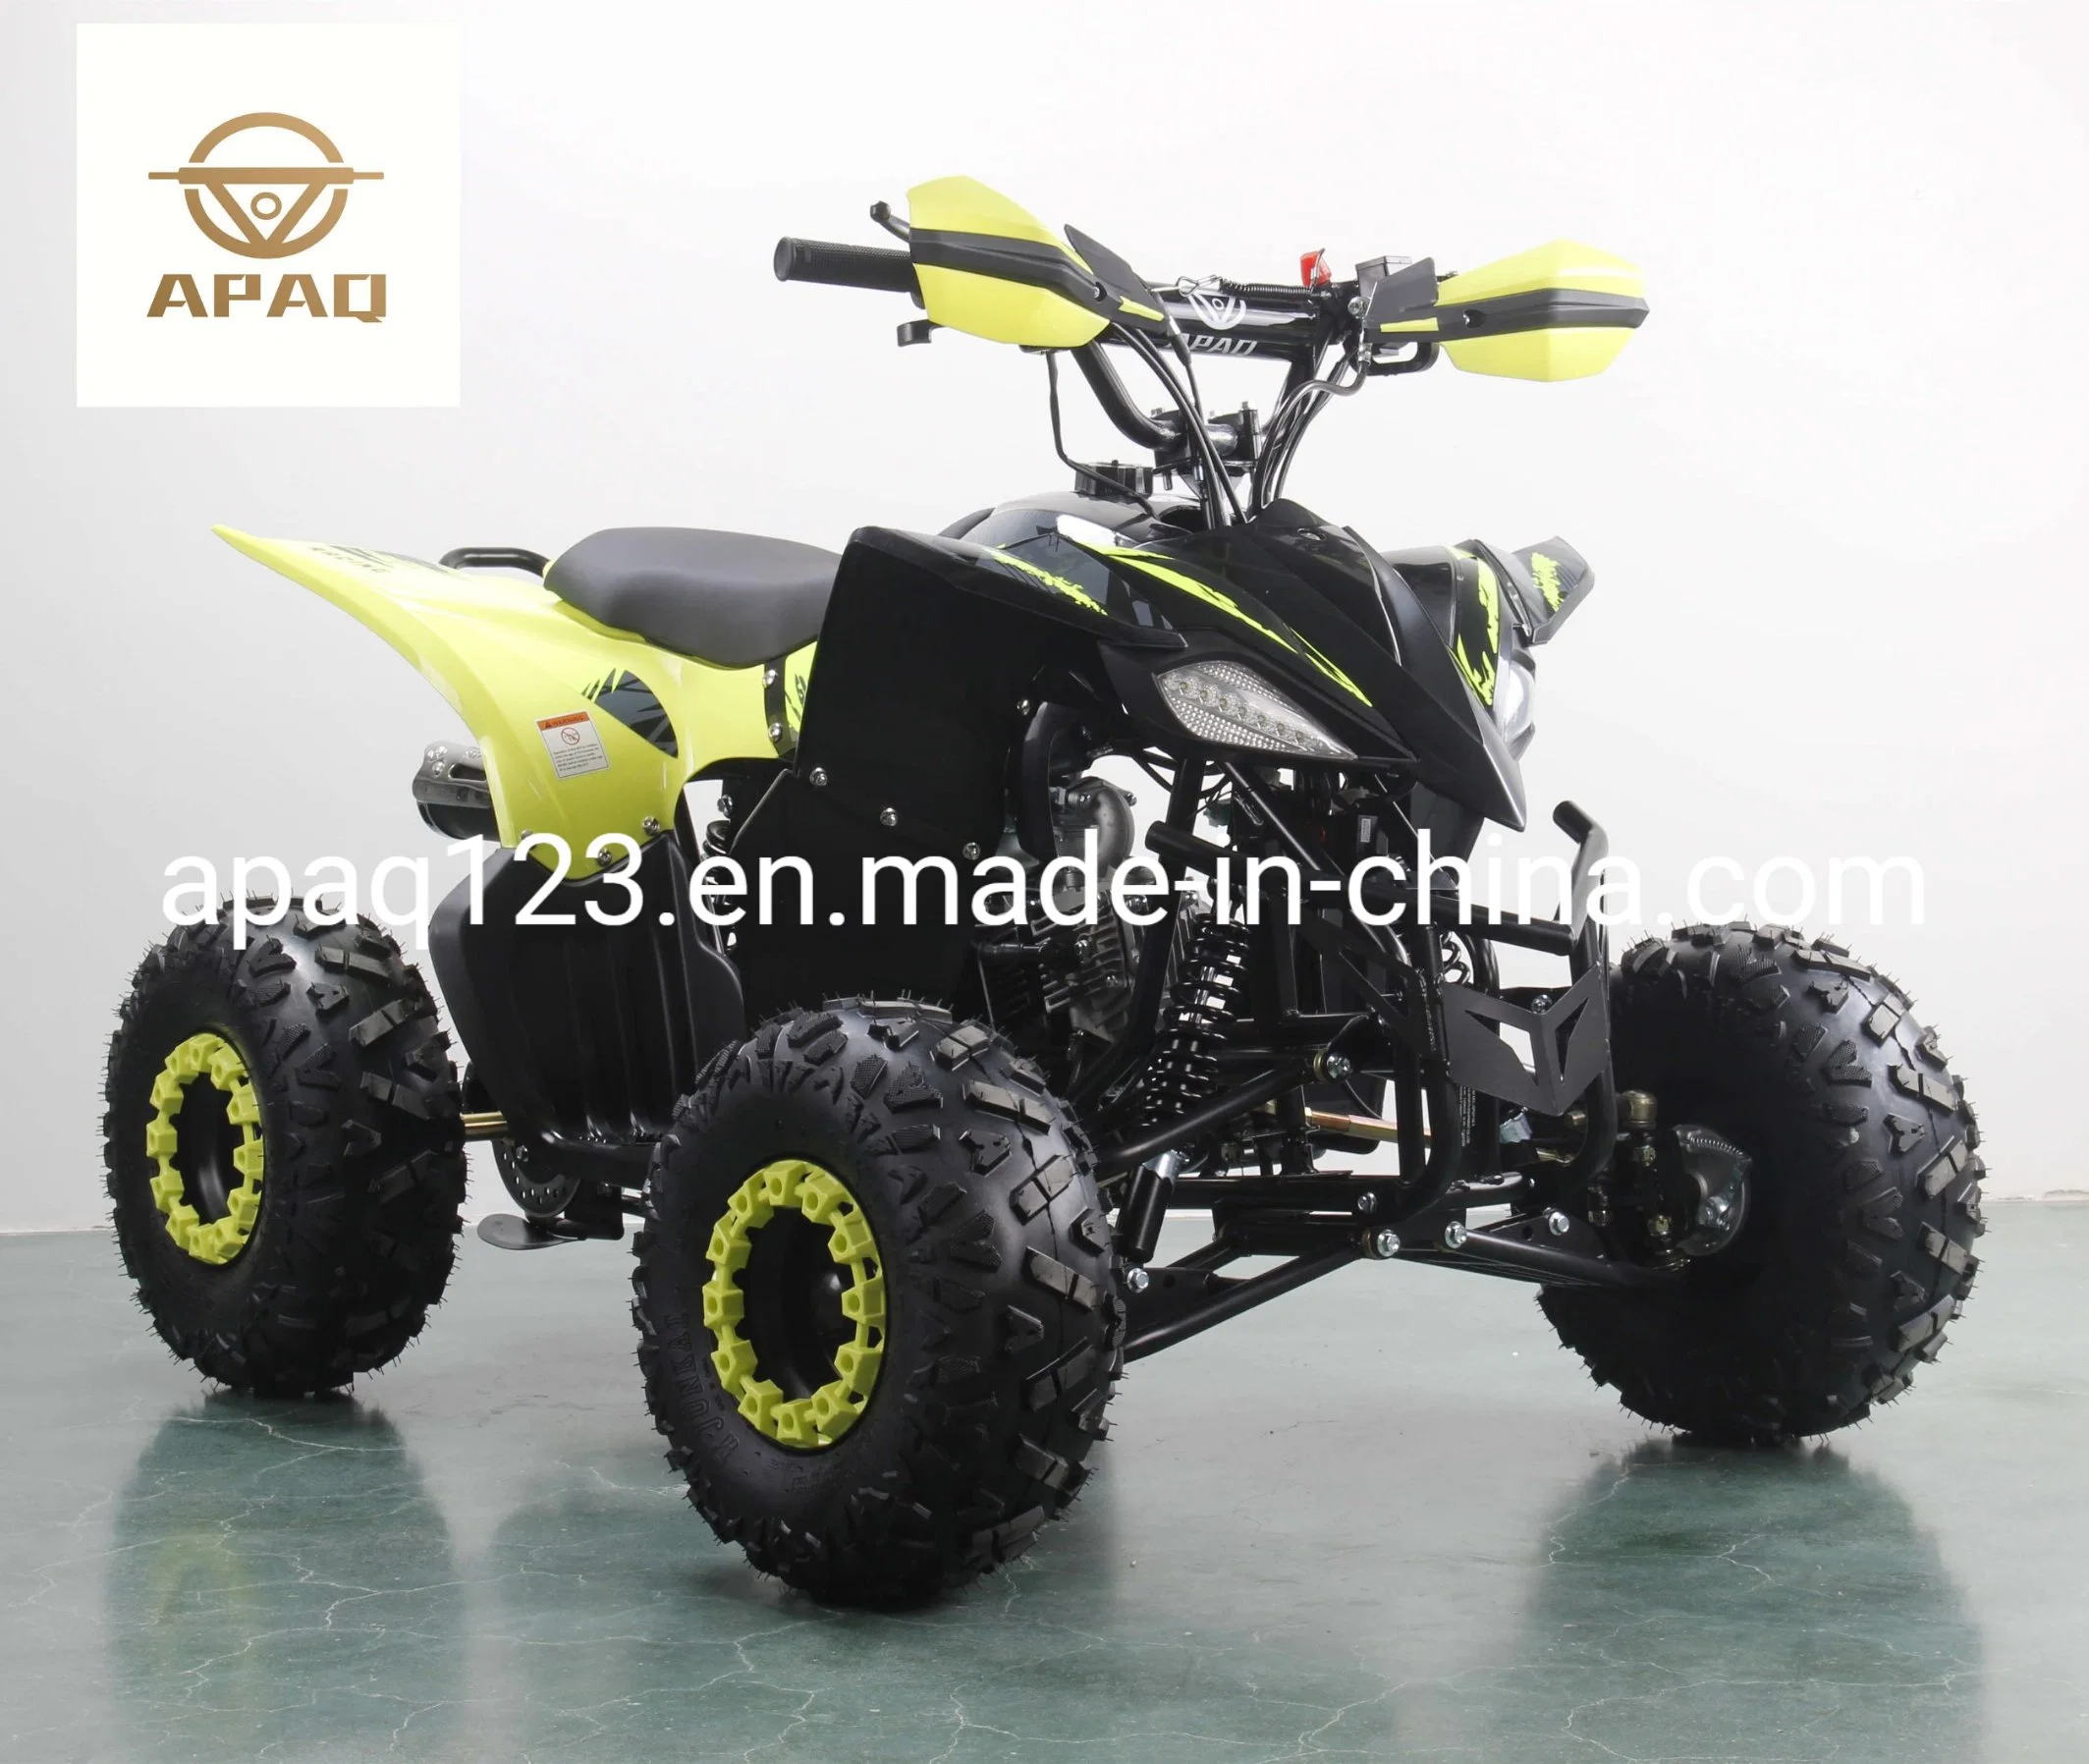 Apaq 110cc ATV for Kids